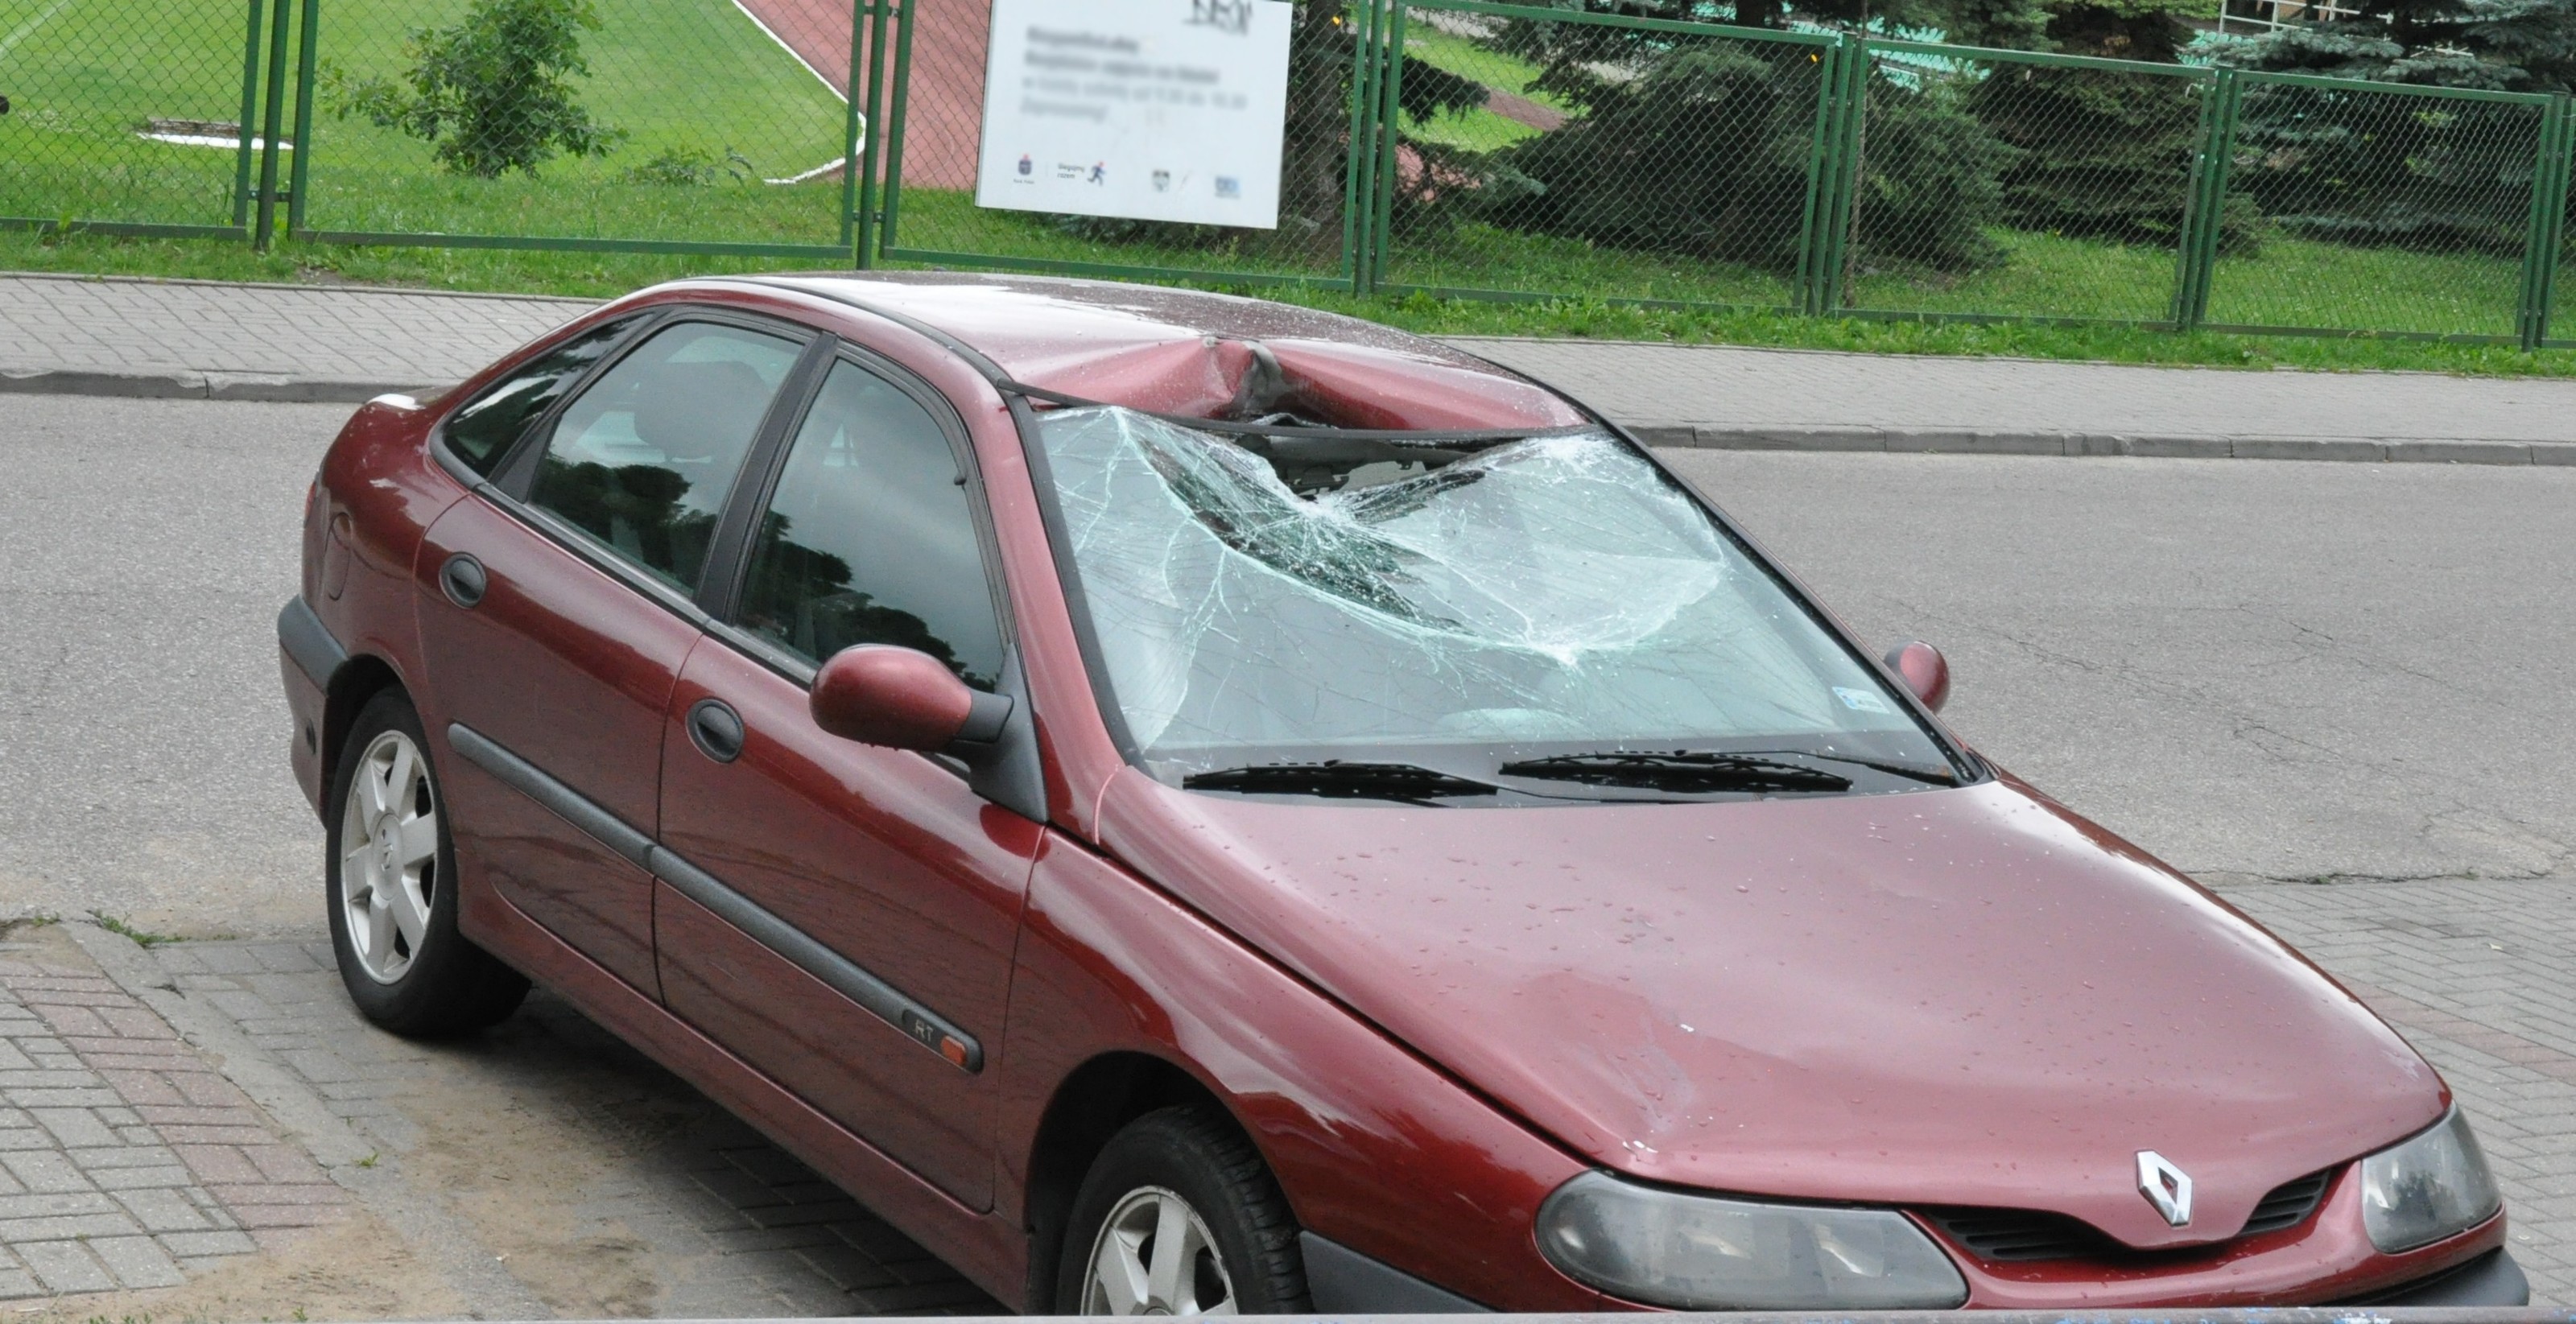 Uszkodzony pojazd na miejscu zdarzenia